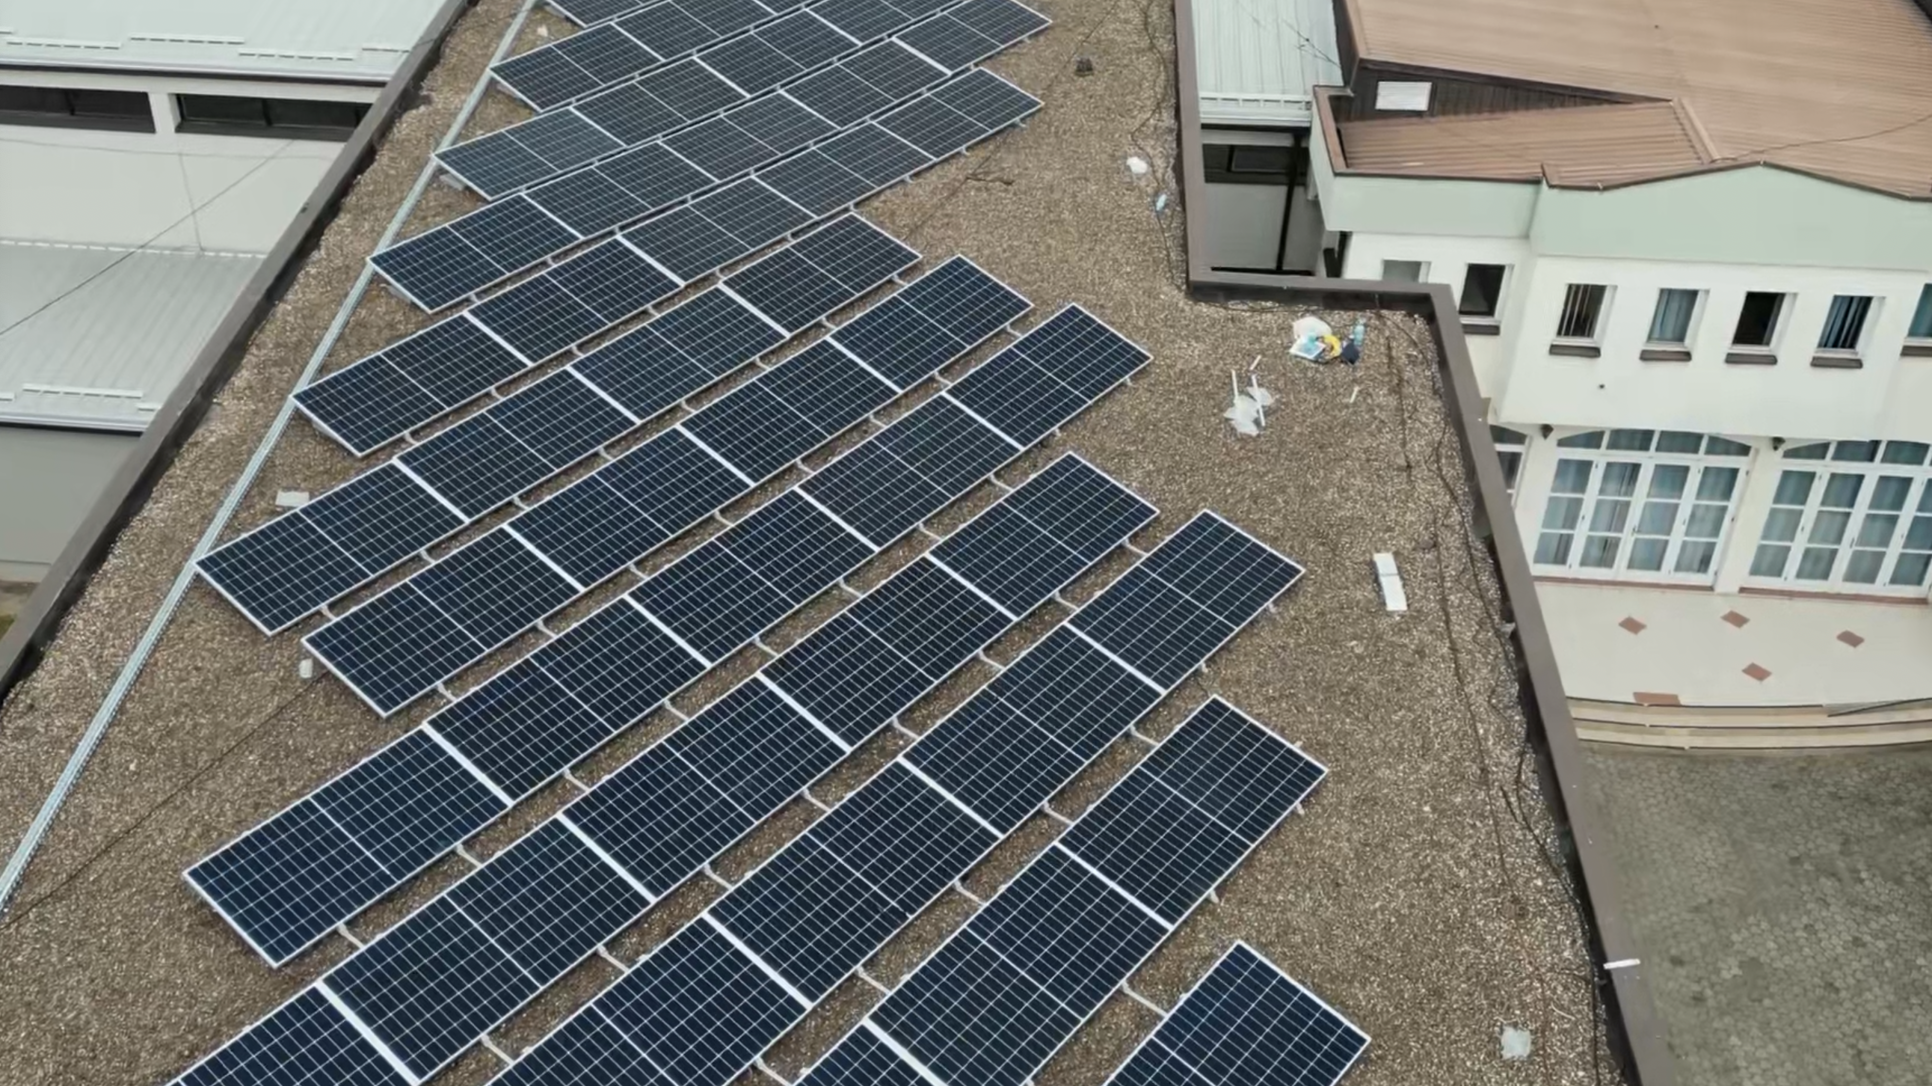 Četiri škole pod jednim krovom – solarnim